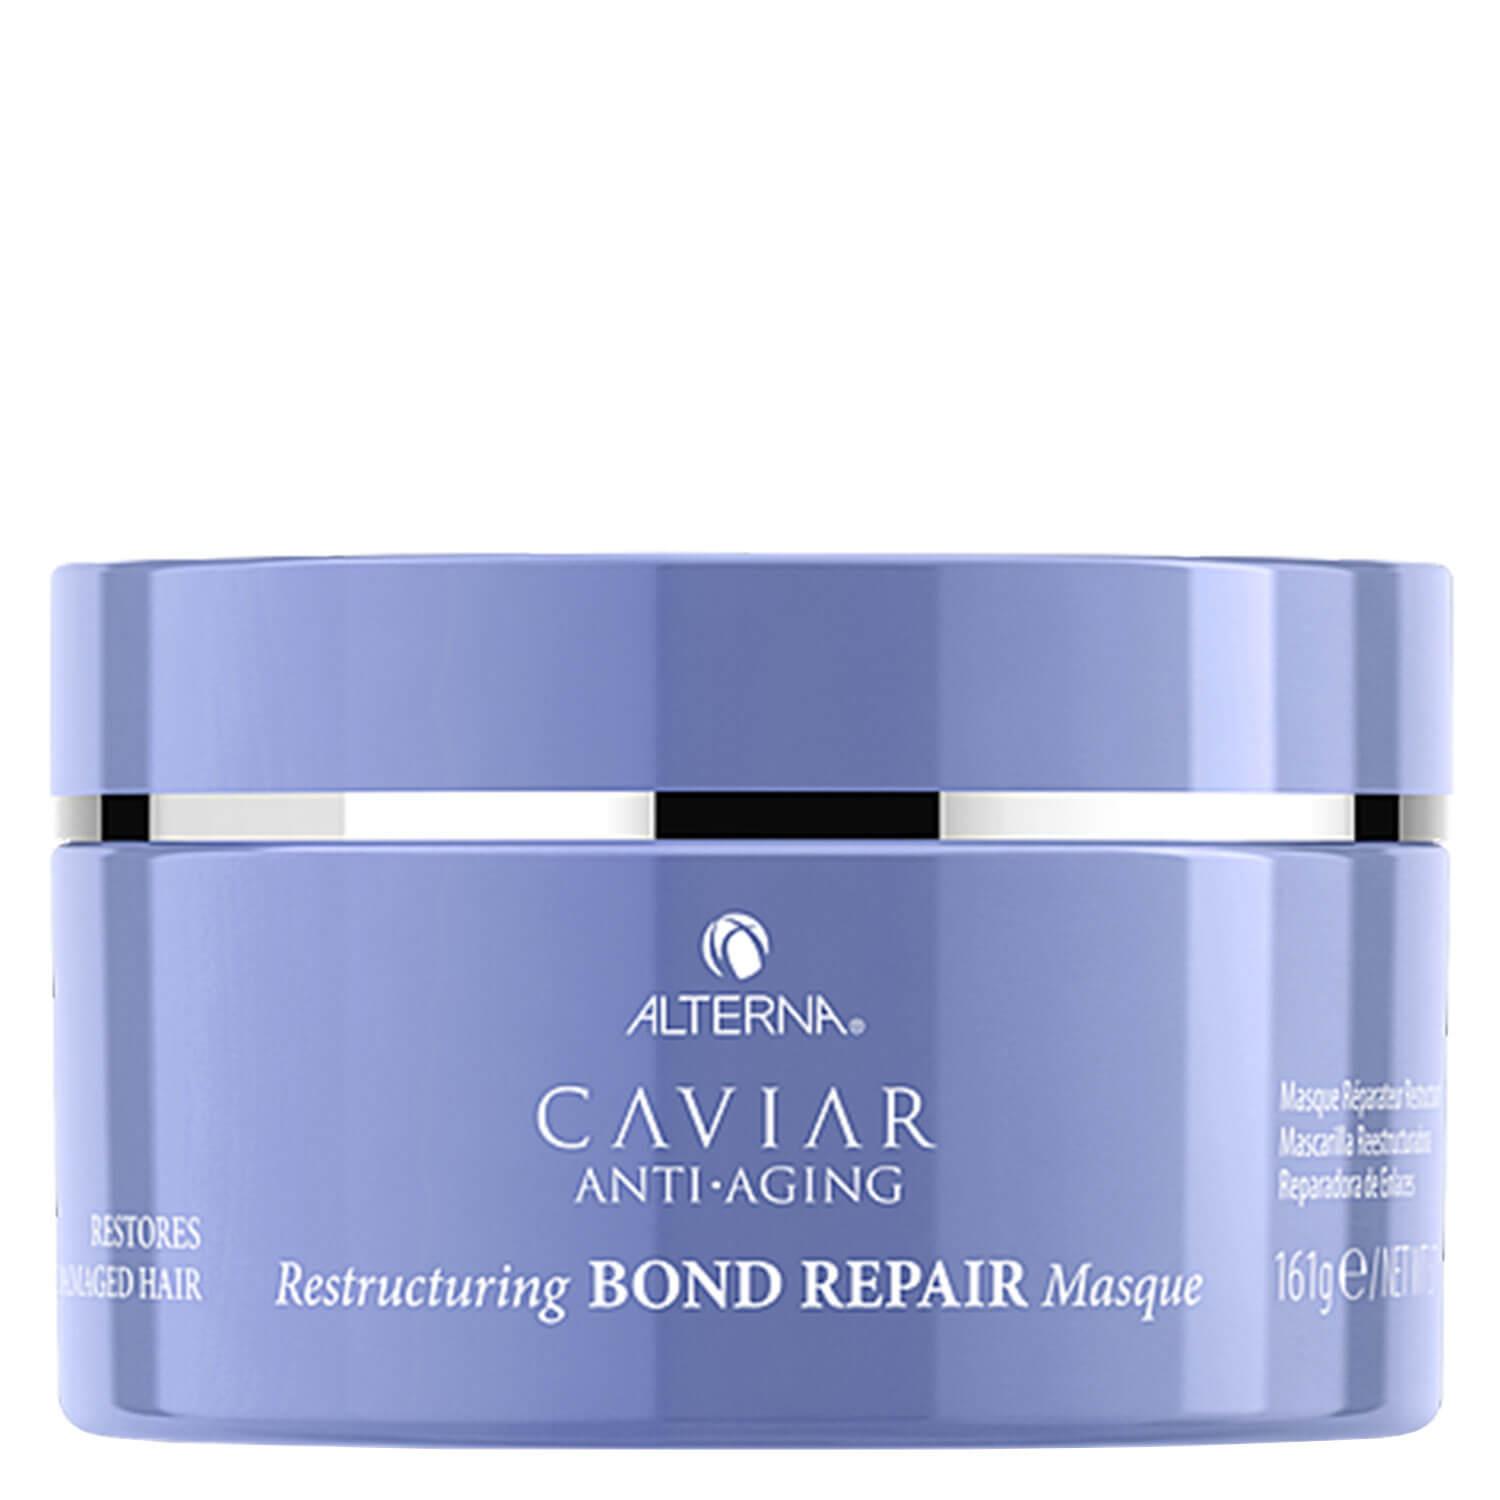 Caviar Restructuring Bond Repair - Masque